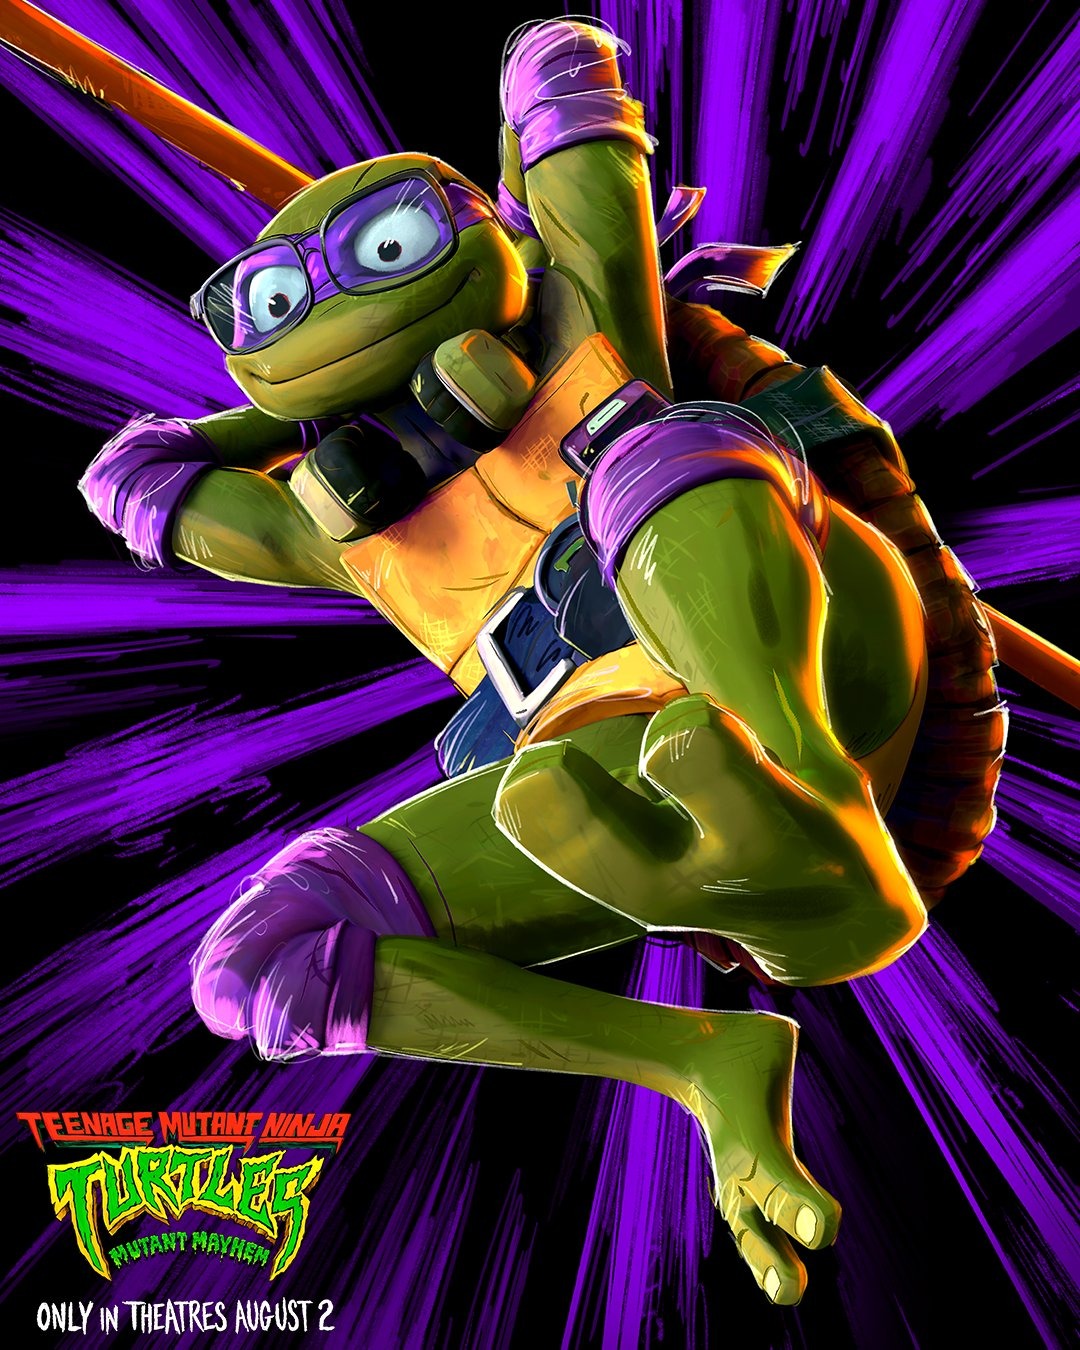 Extra Large Movie Poster Image for Teenage Mutant Ninja Turtles: Mutant Mayhem (#41 of 48)